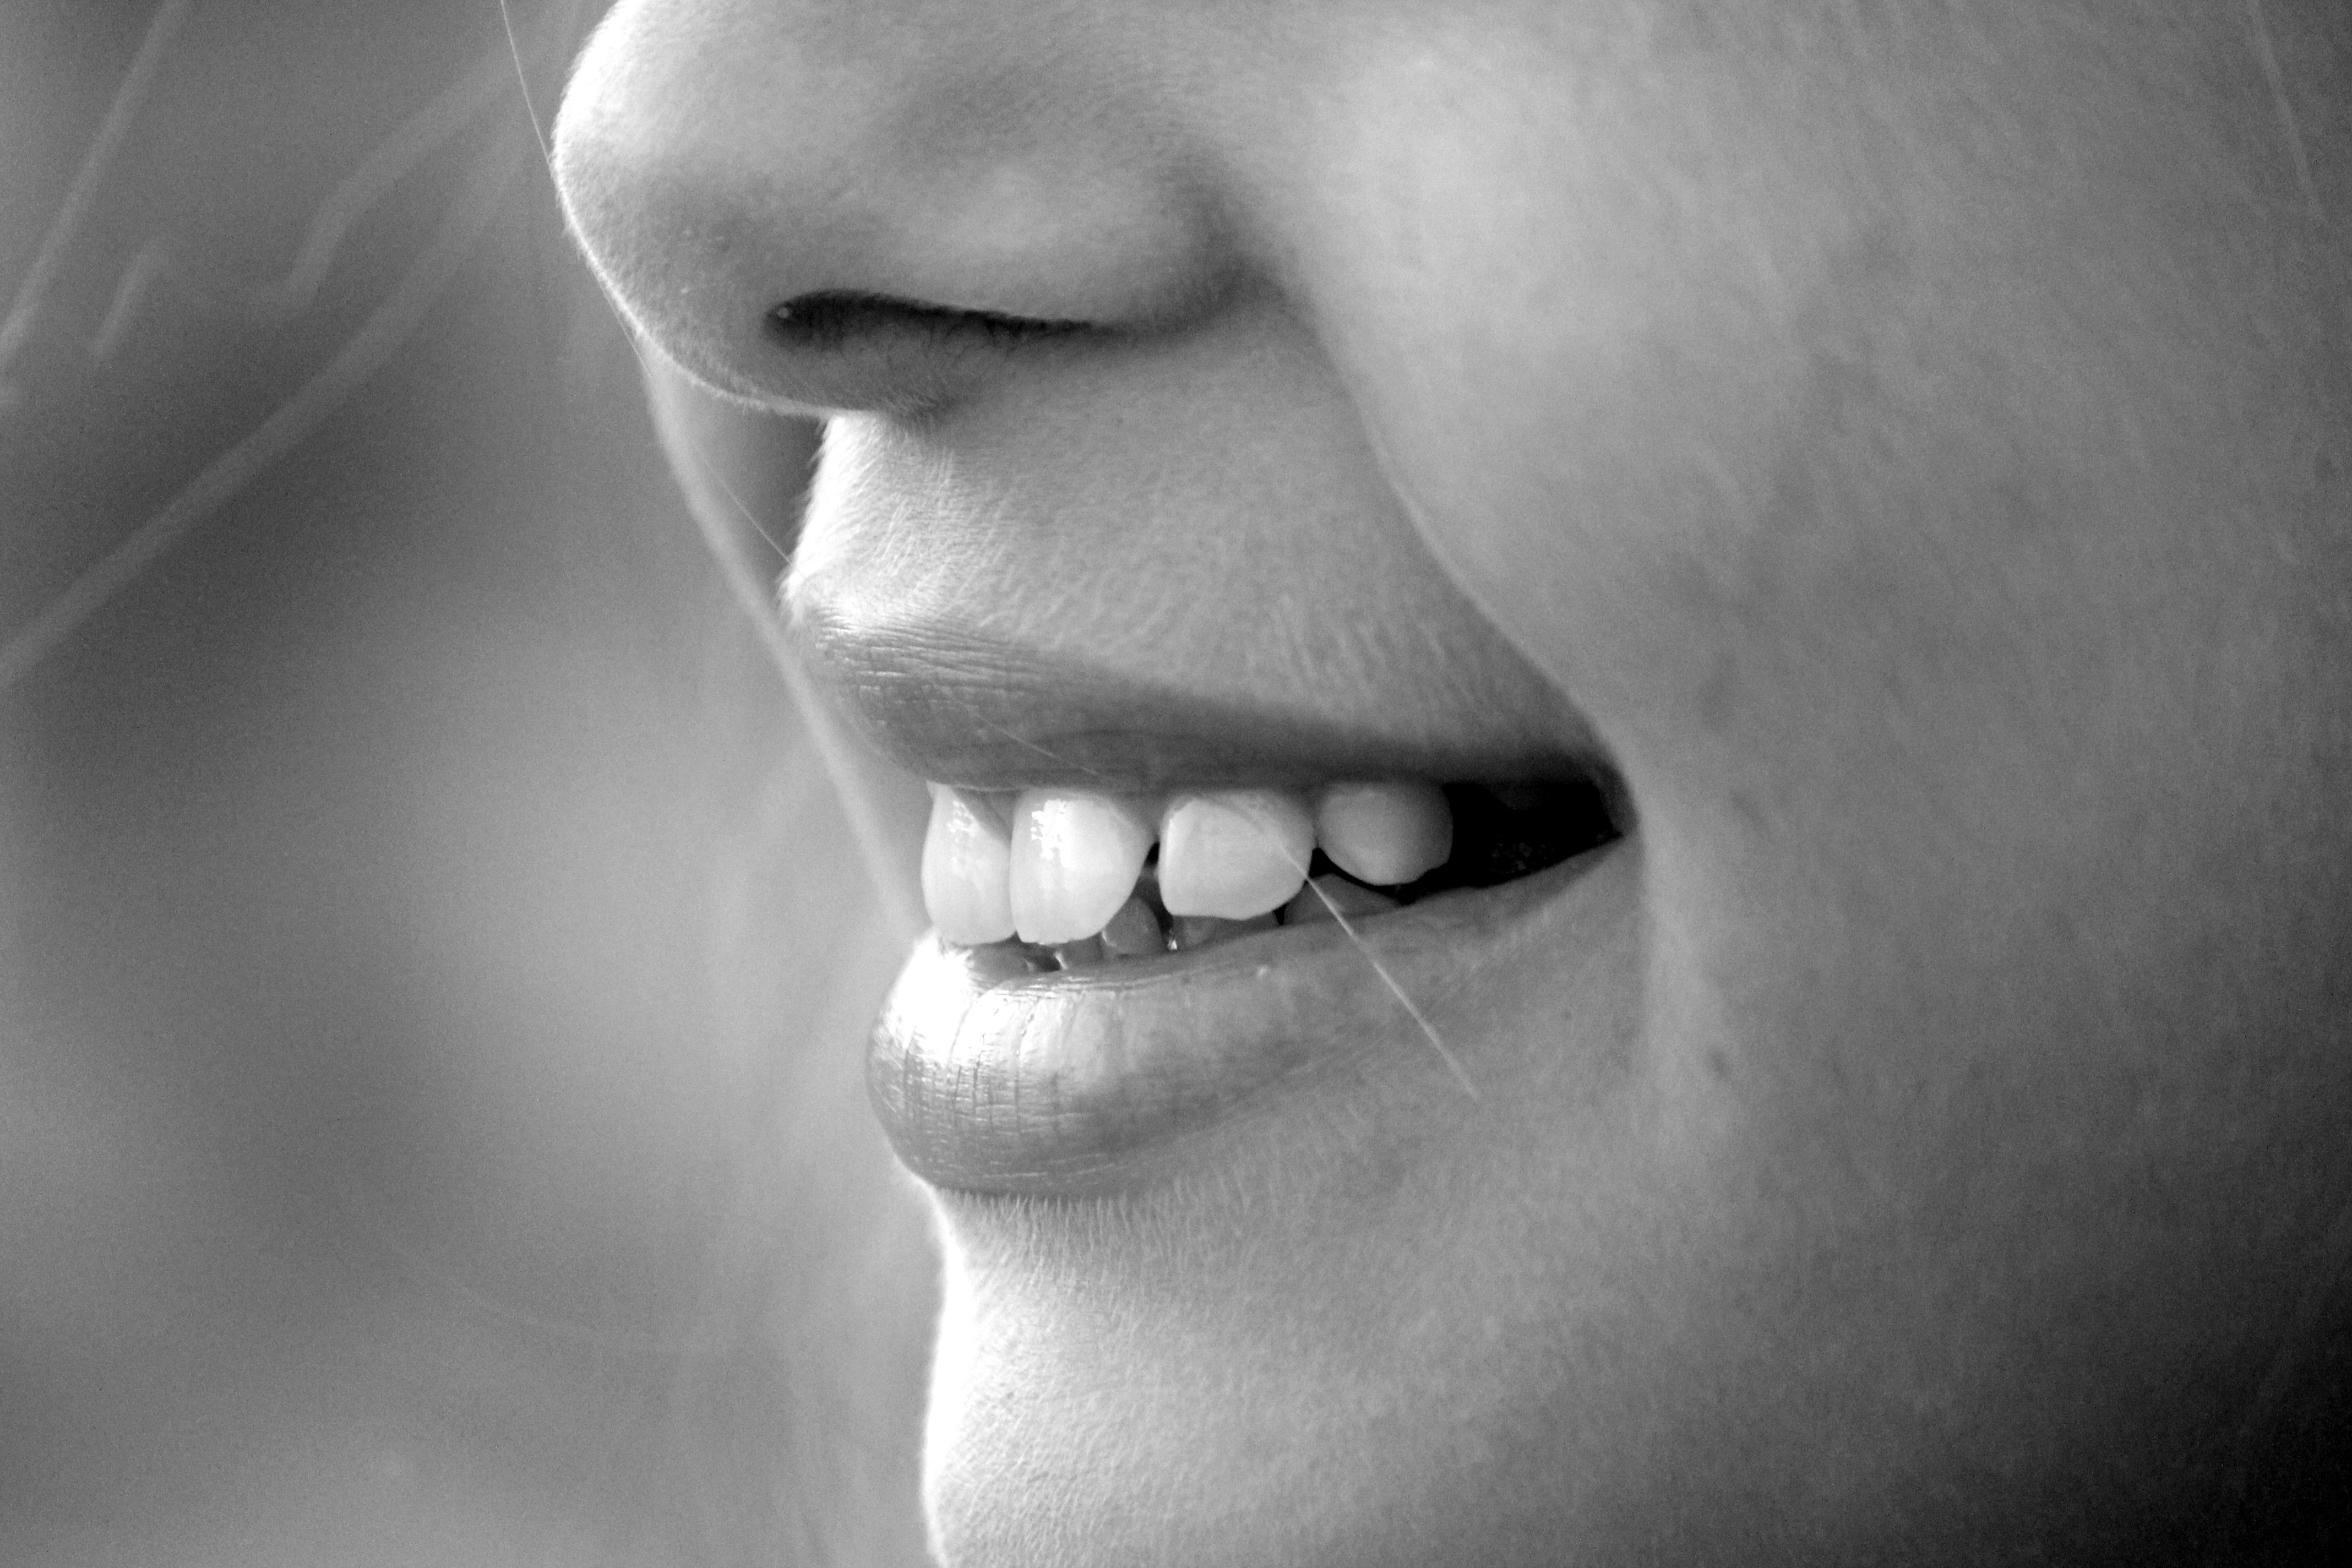 woman's teeth